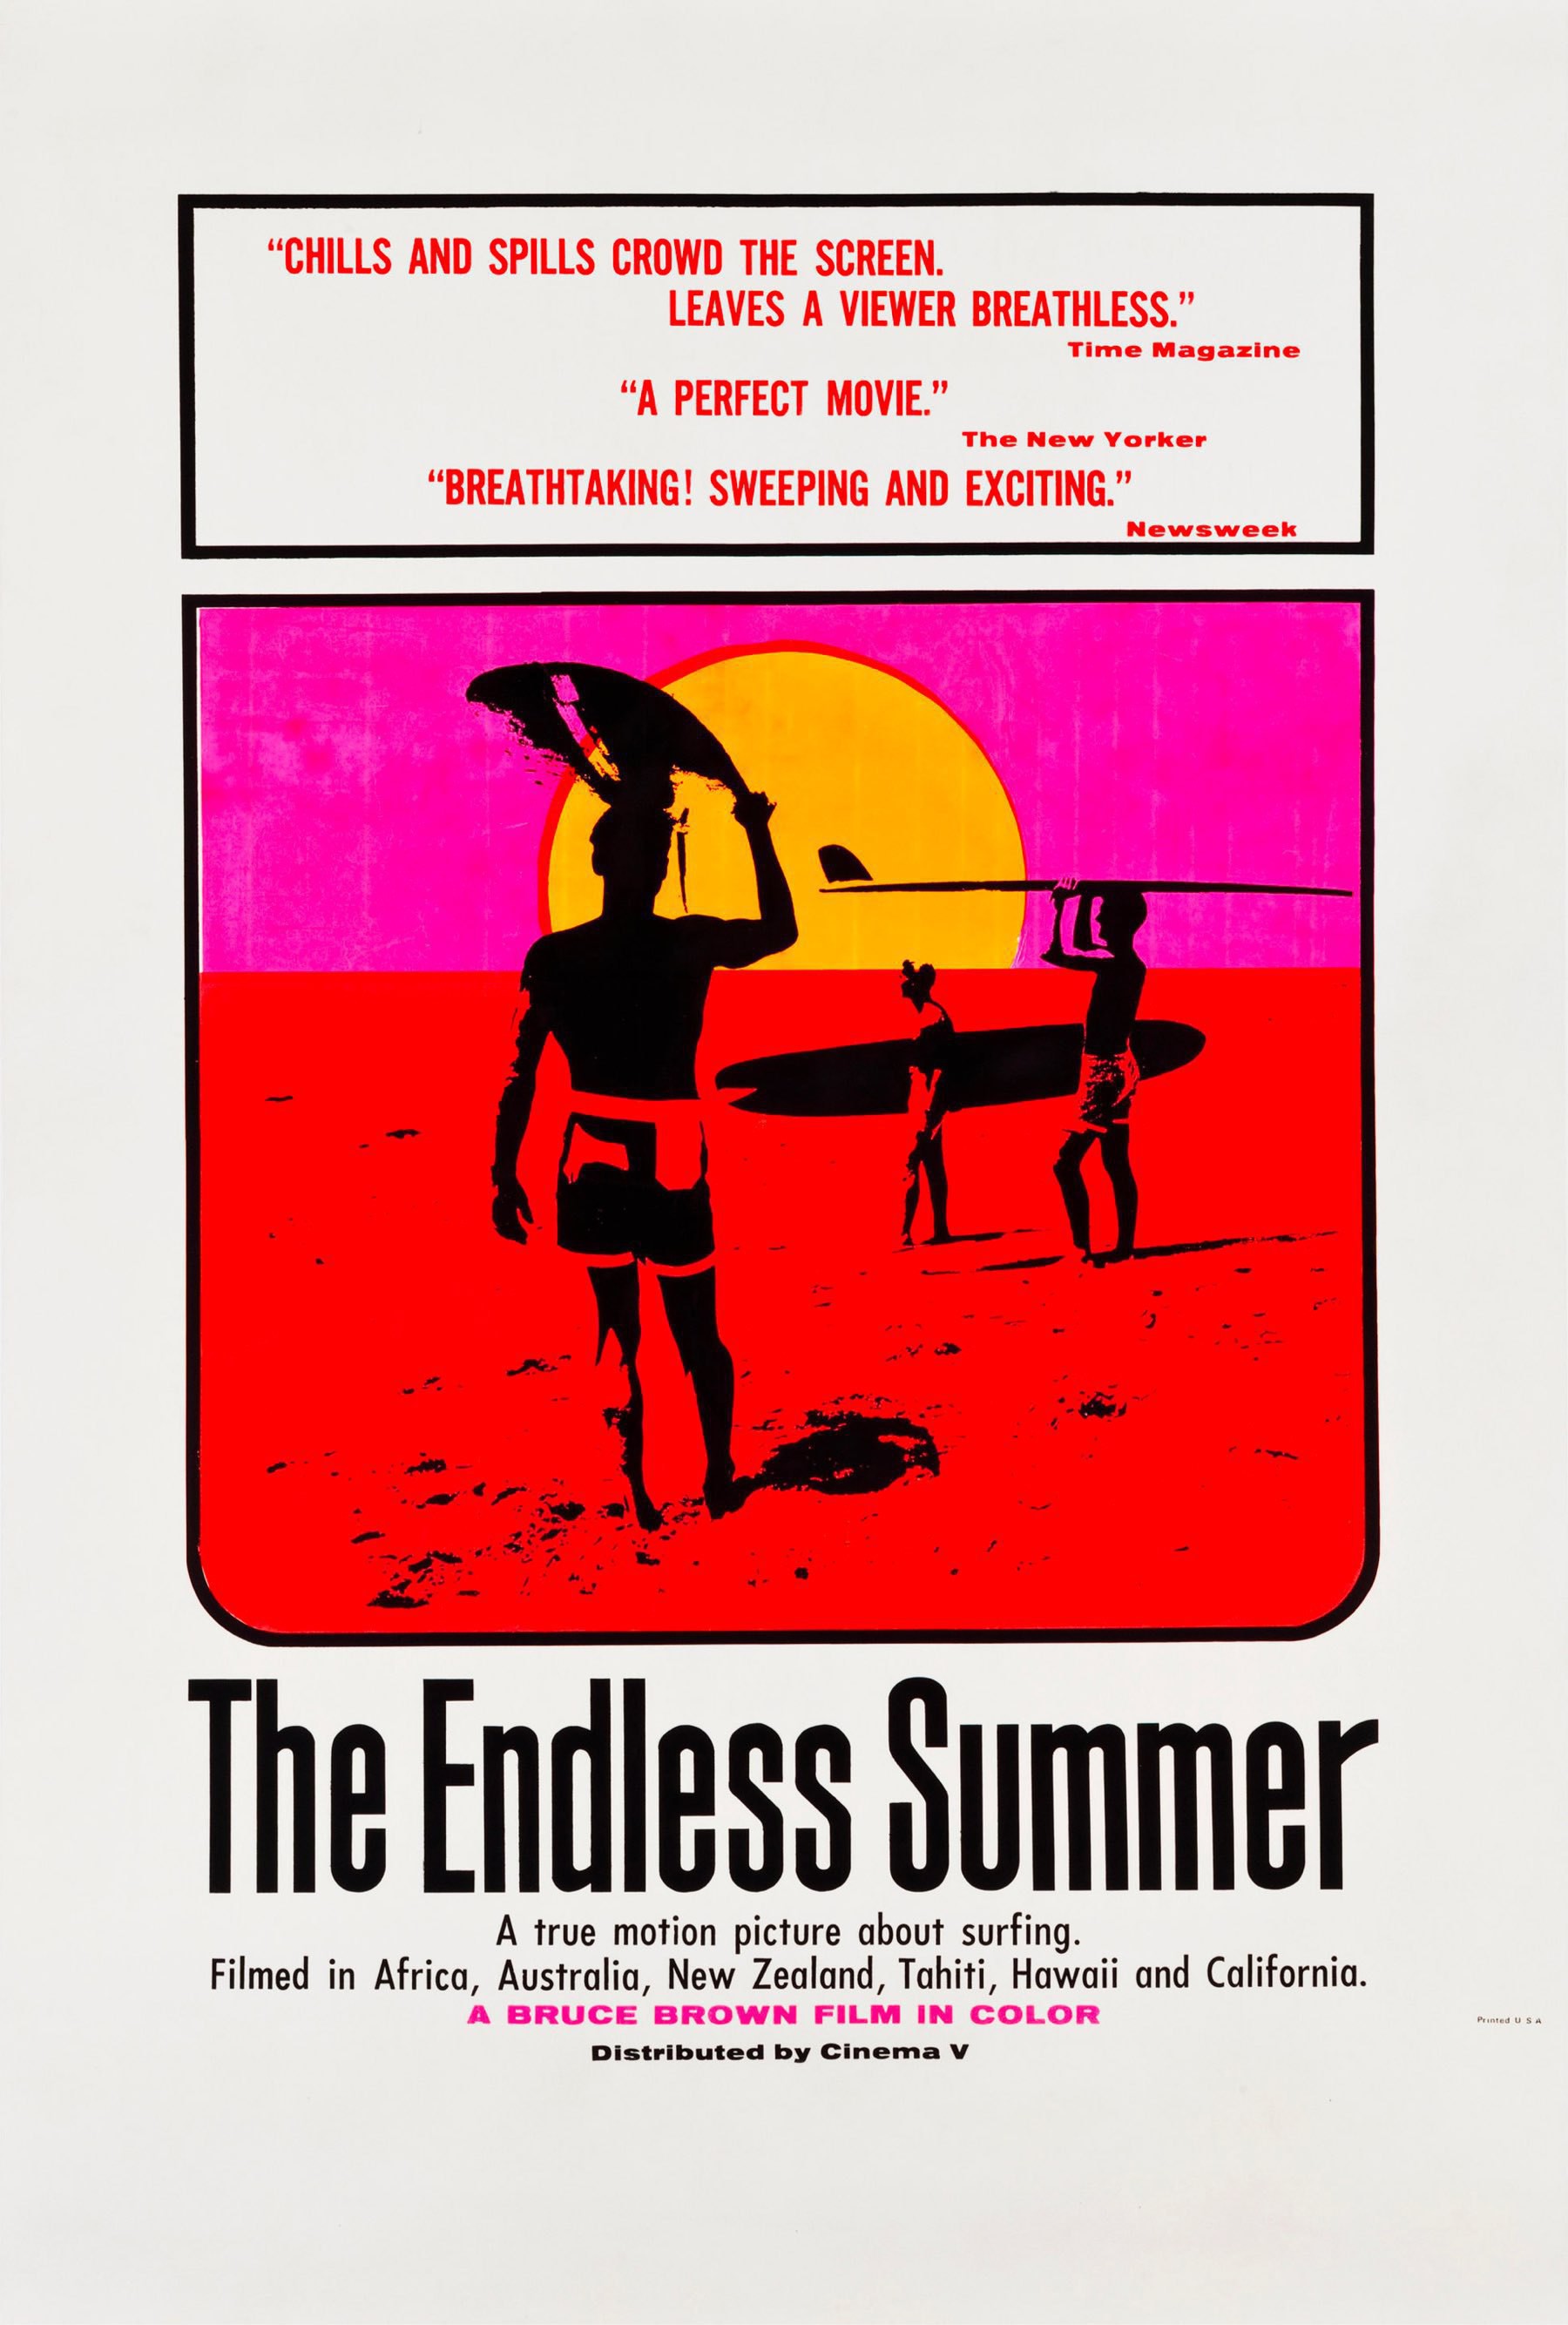 Endless Summer Poster